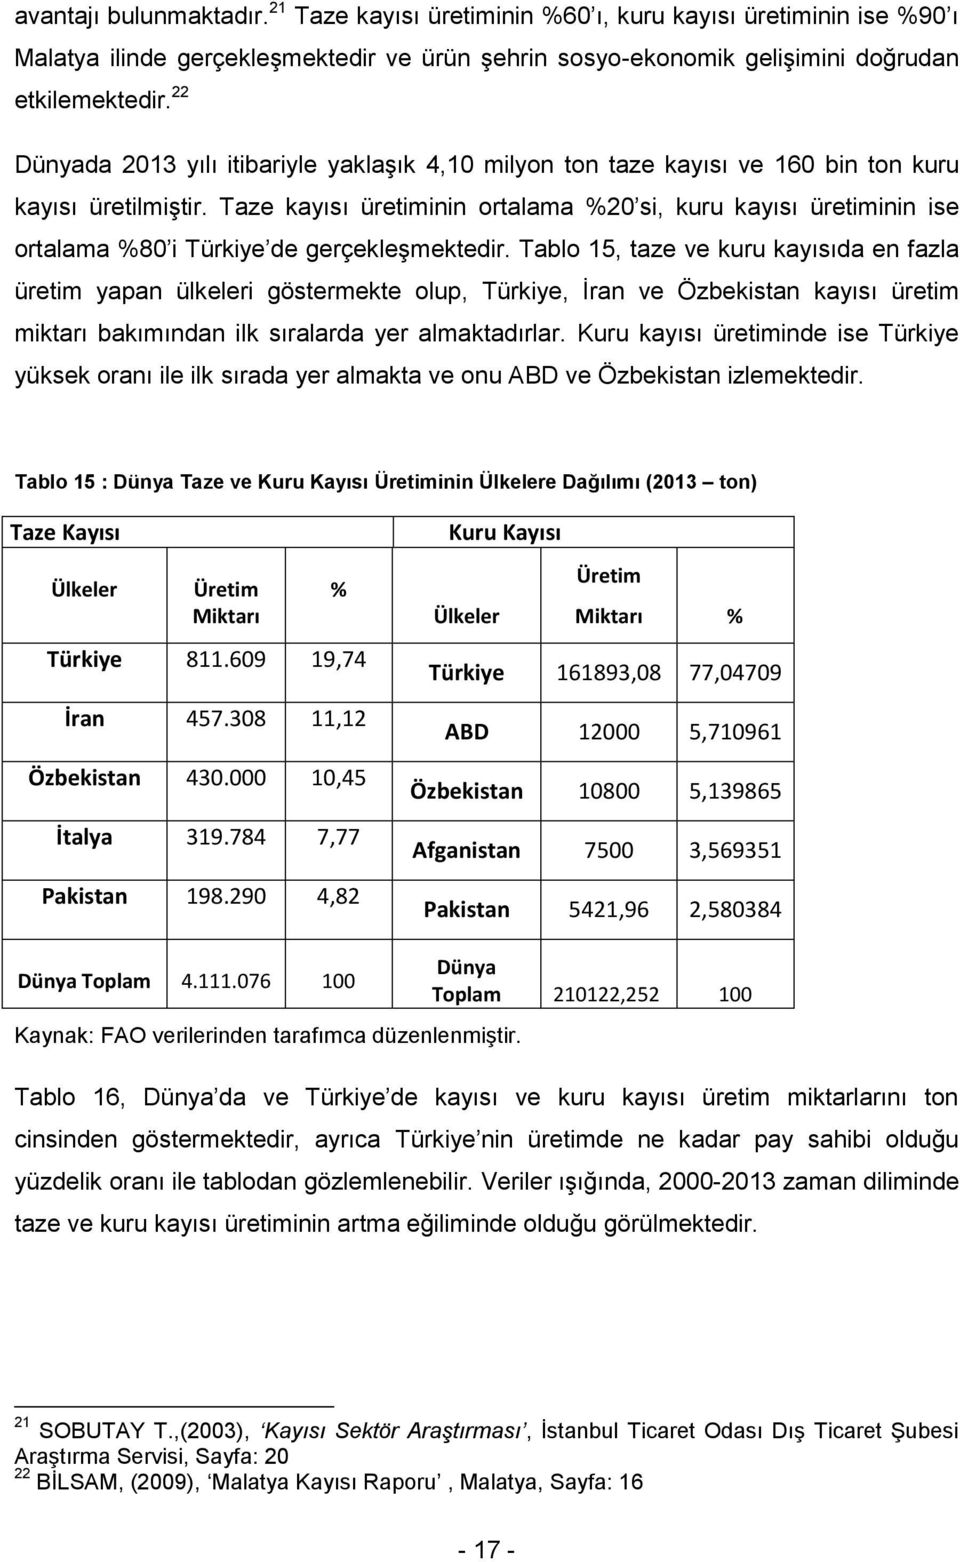 Taze kayısı üretiminin ortalama %20 si, kuru kayısı üretiminin ise ortalama %80 i Türkiye de gerçekleģmektedir.